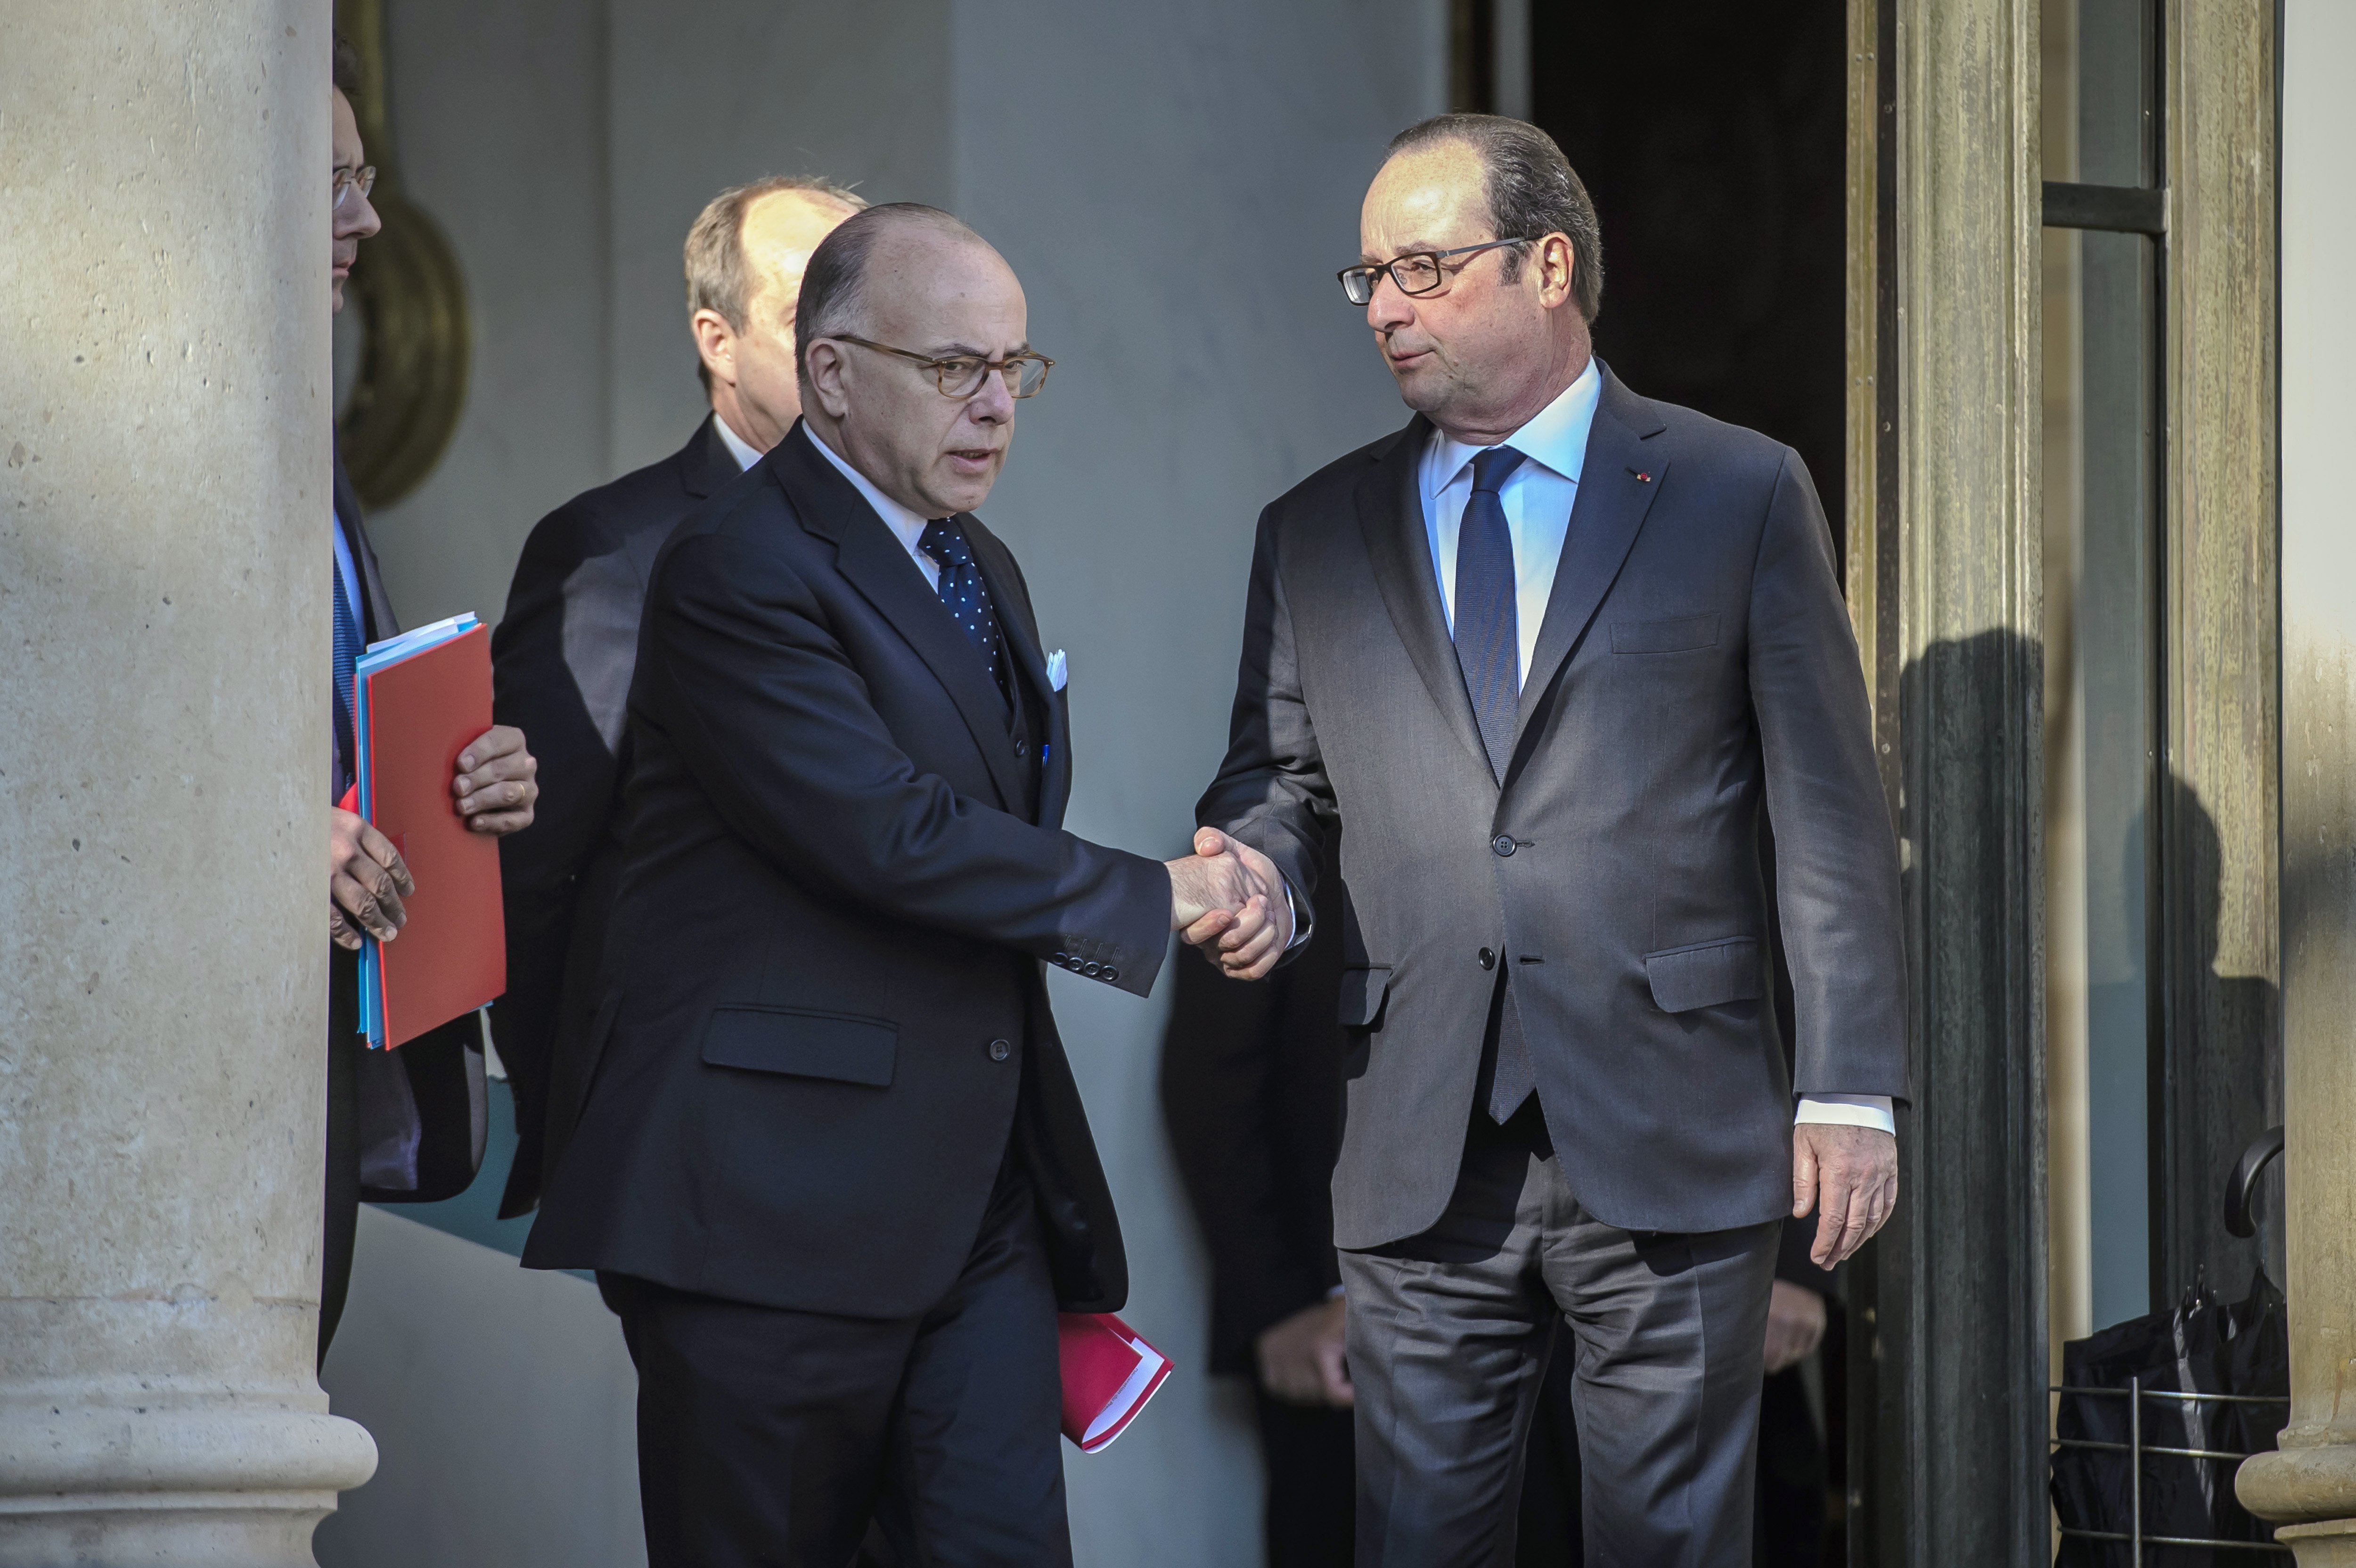 El govern francès defensa que "res" pot impedir les eleccions